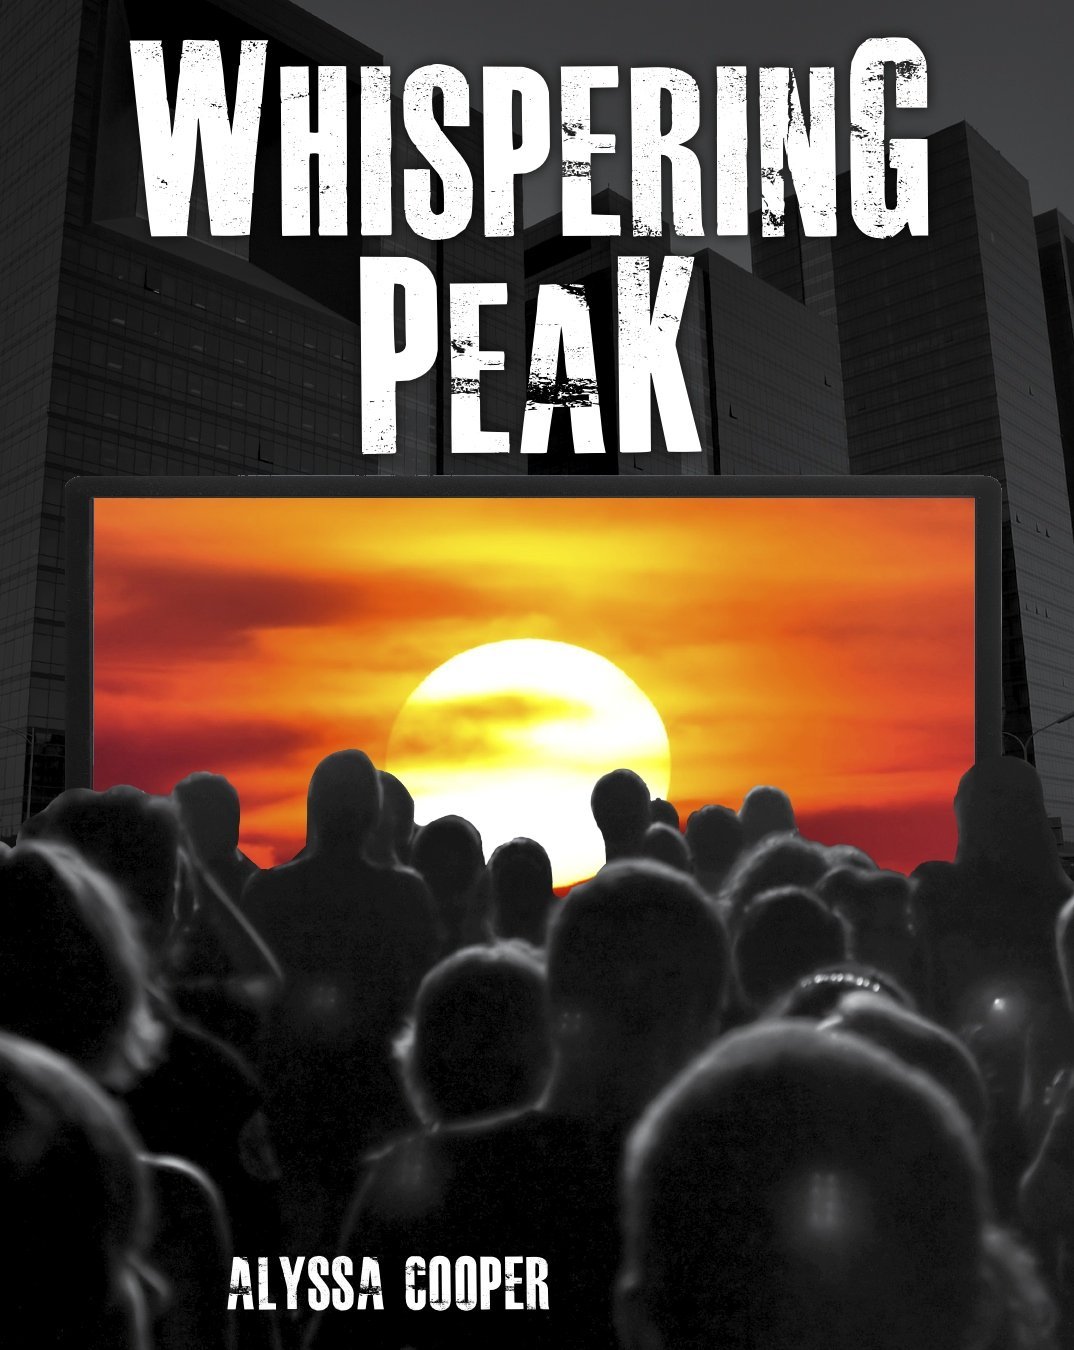 Whispering Peak by Alyssa Cooper